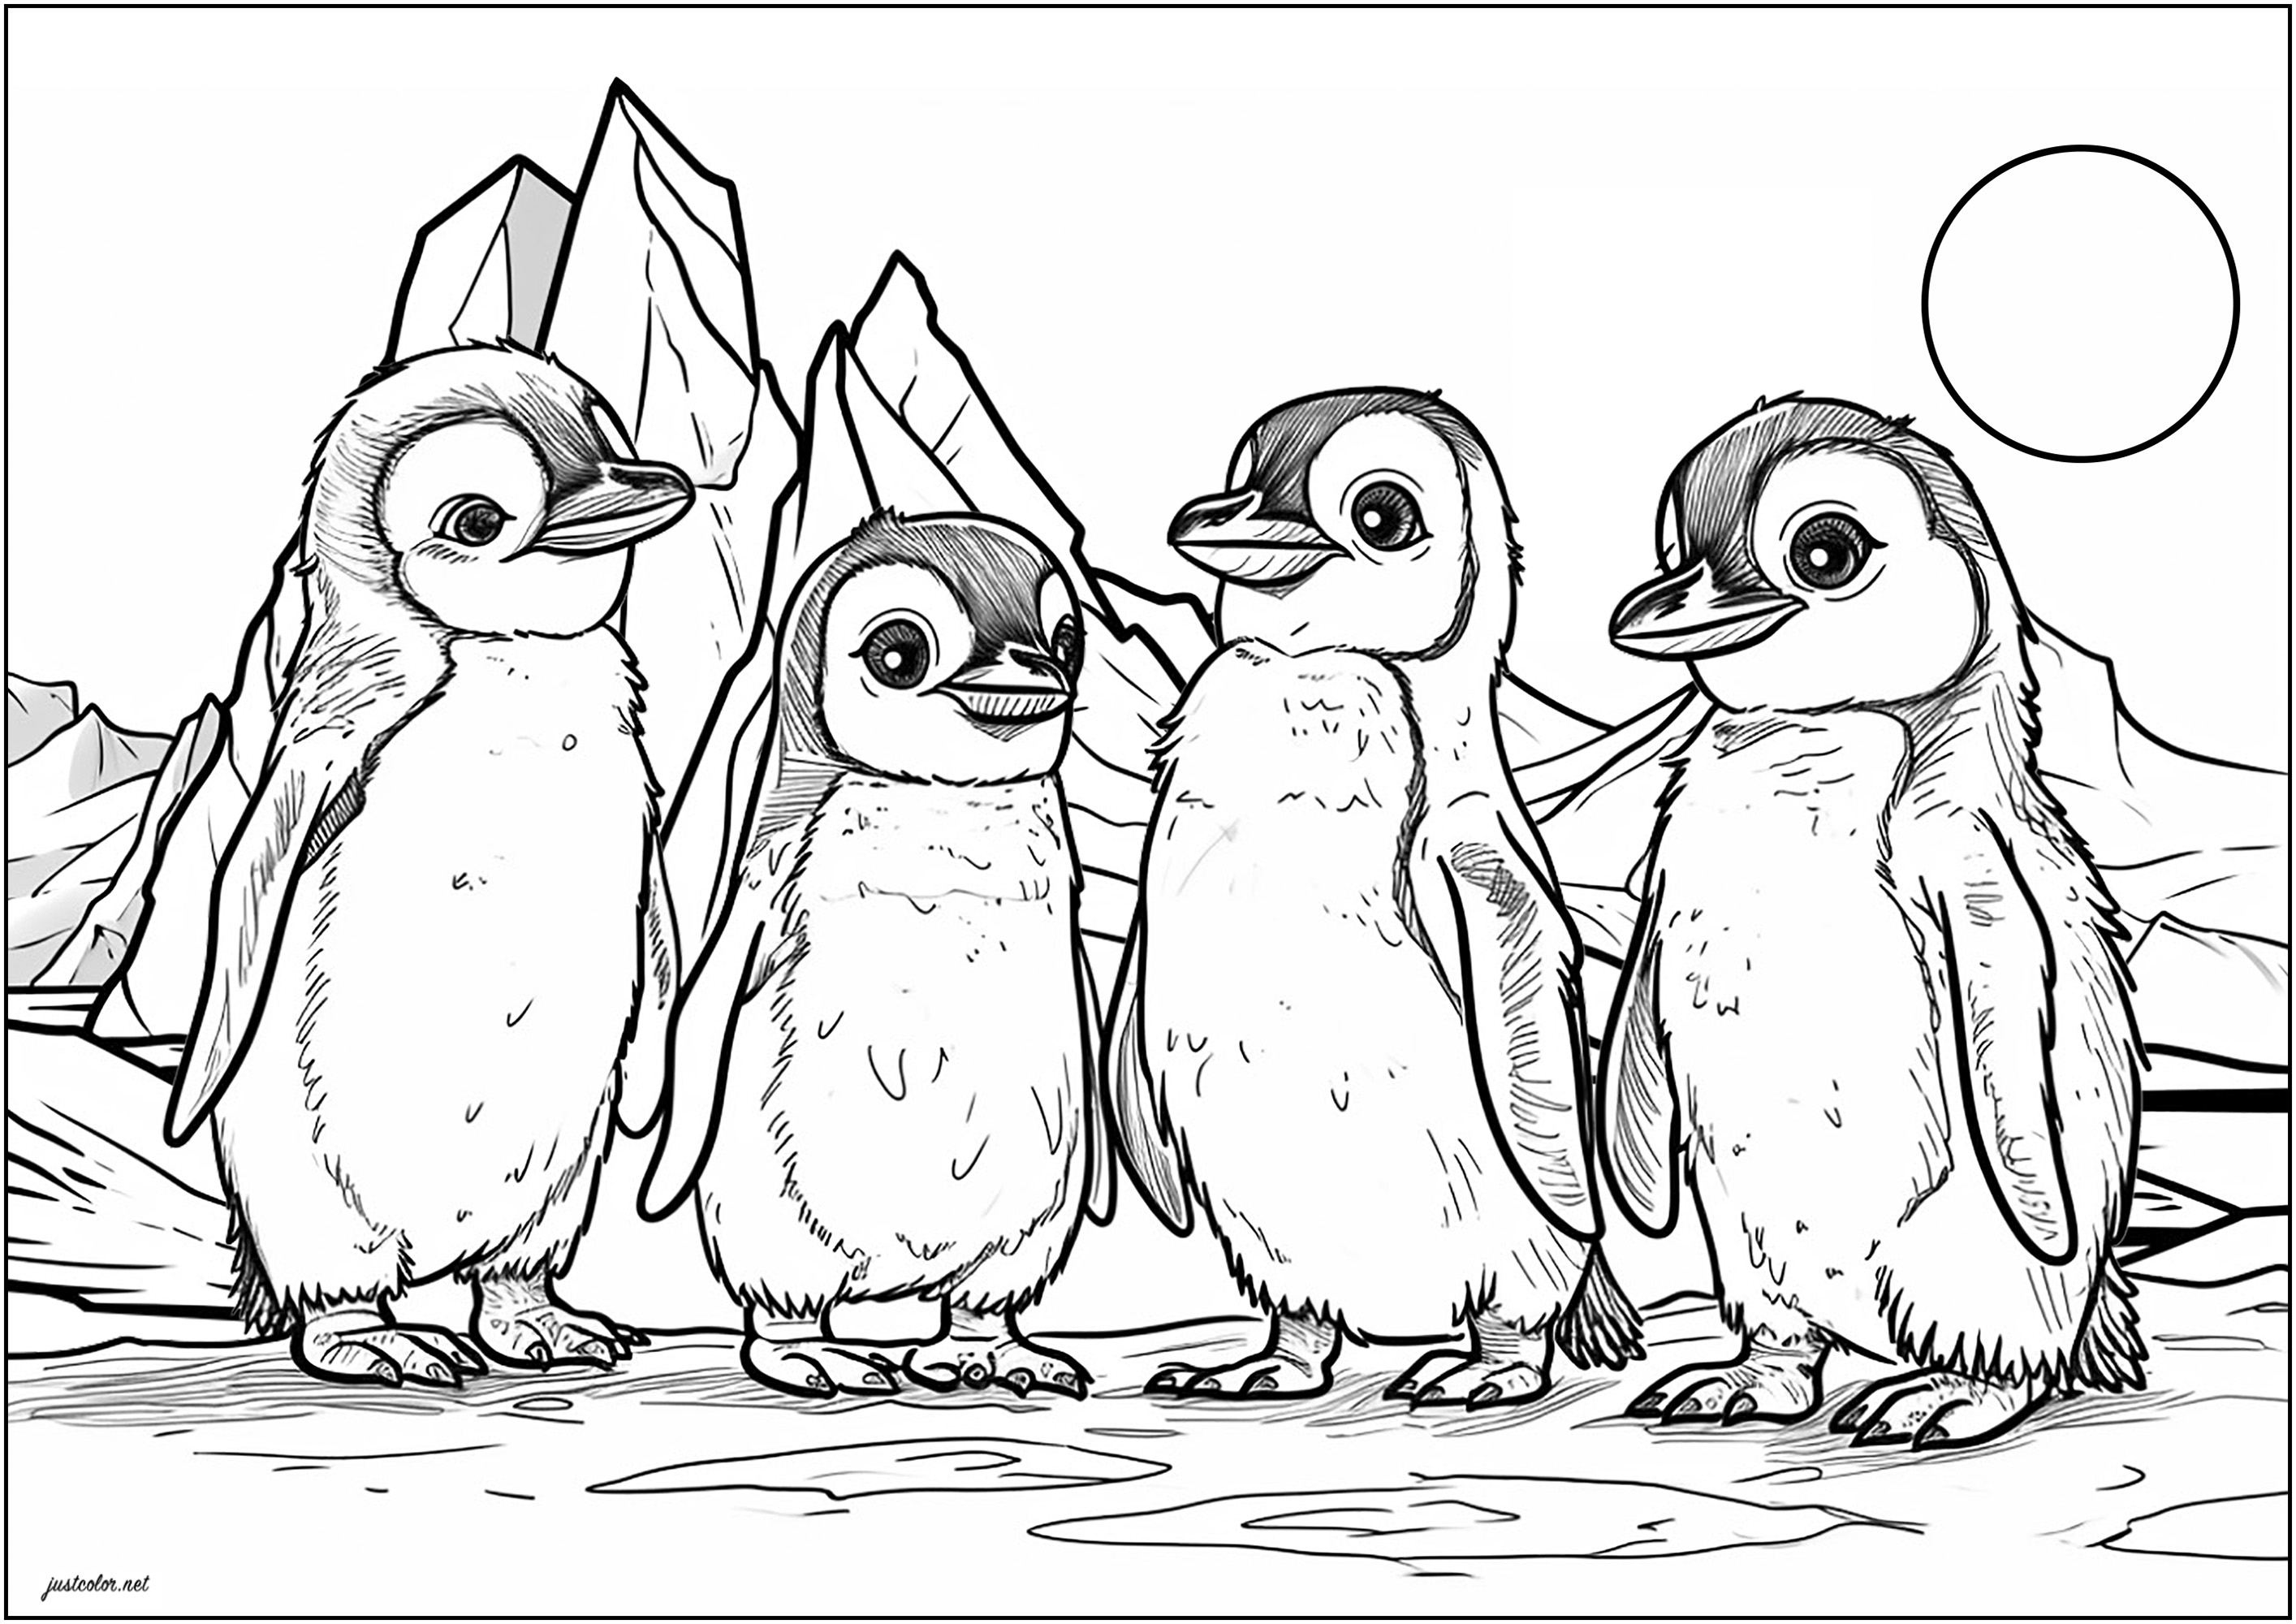 Quatre petits pingouins sur la banquise